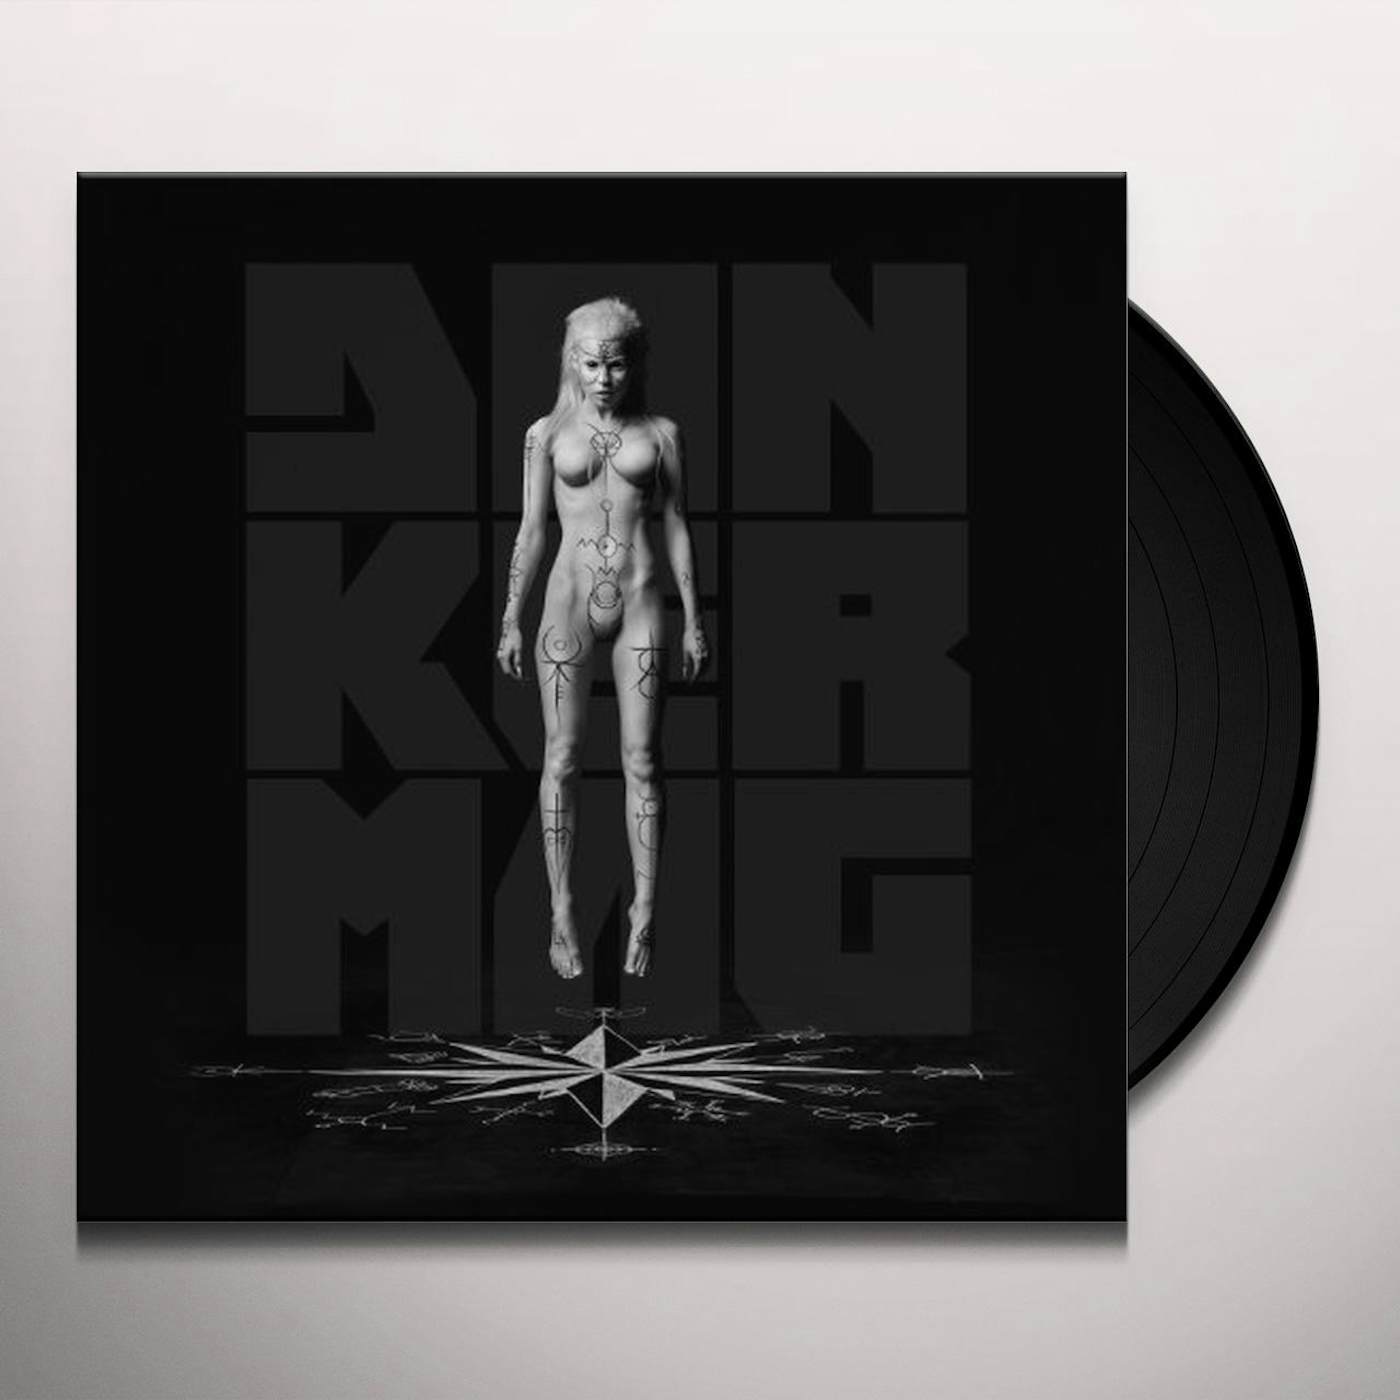 Die Antwoord Donker Mag Vinyl Record